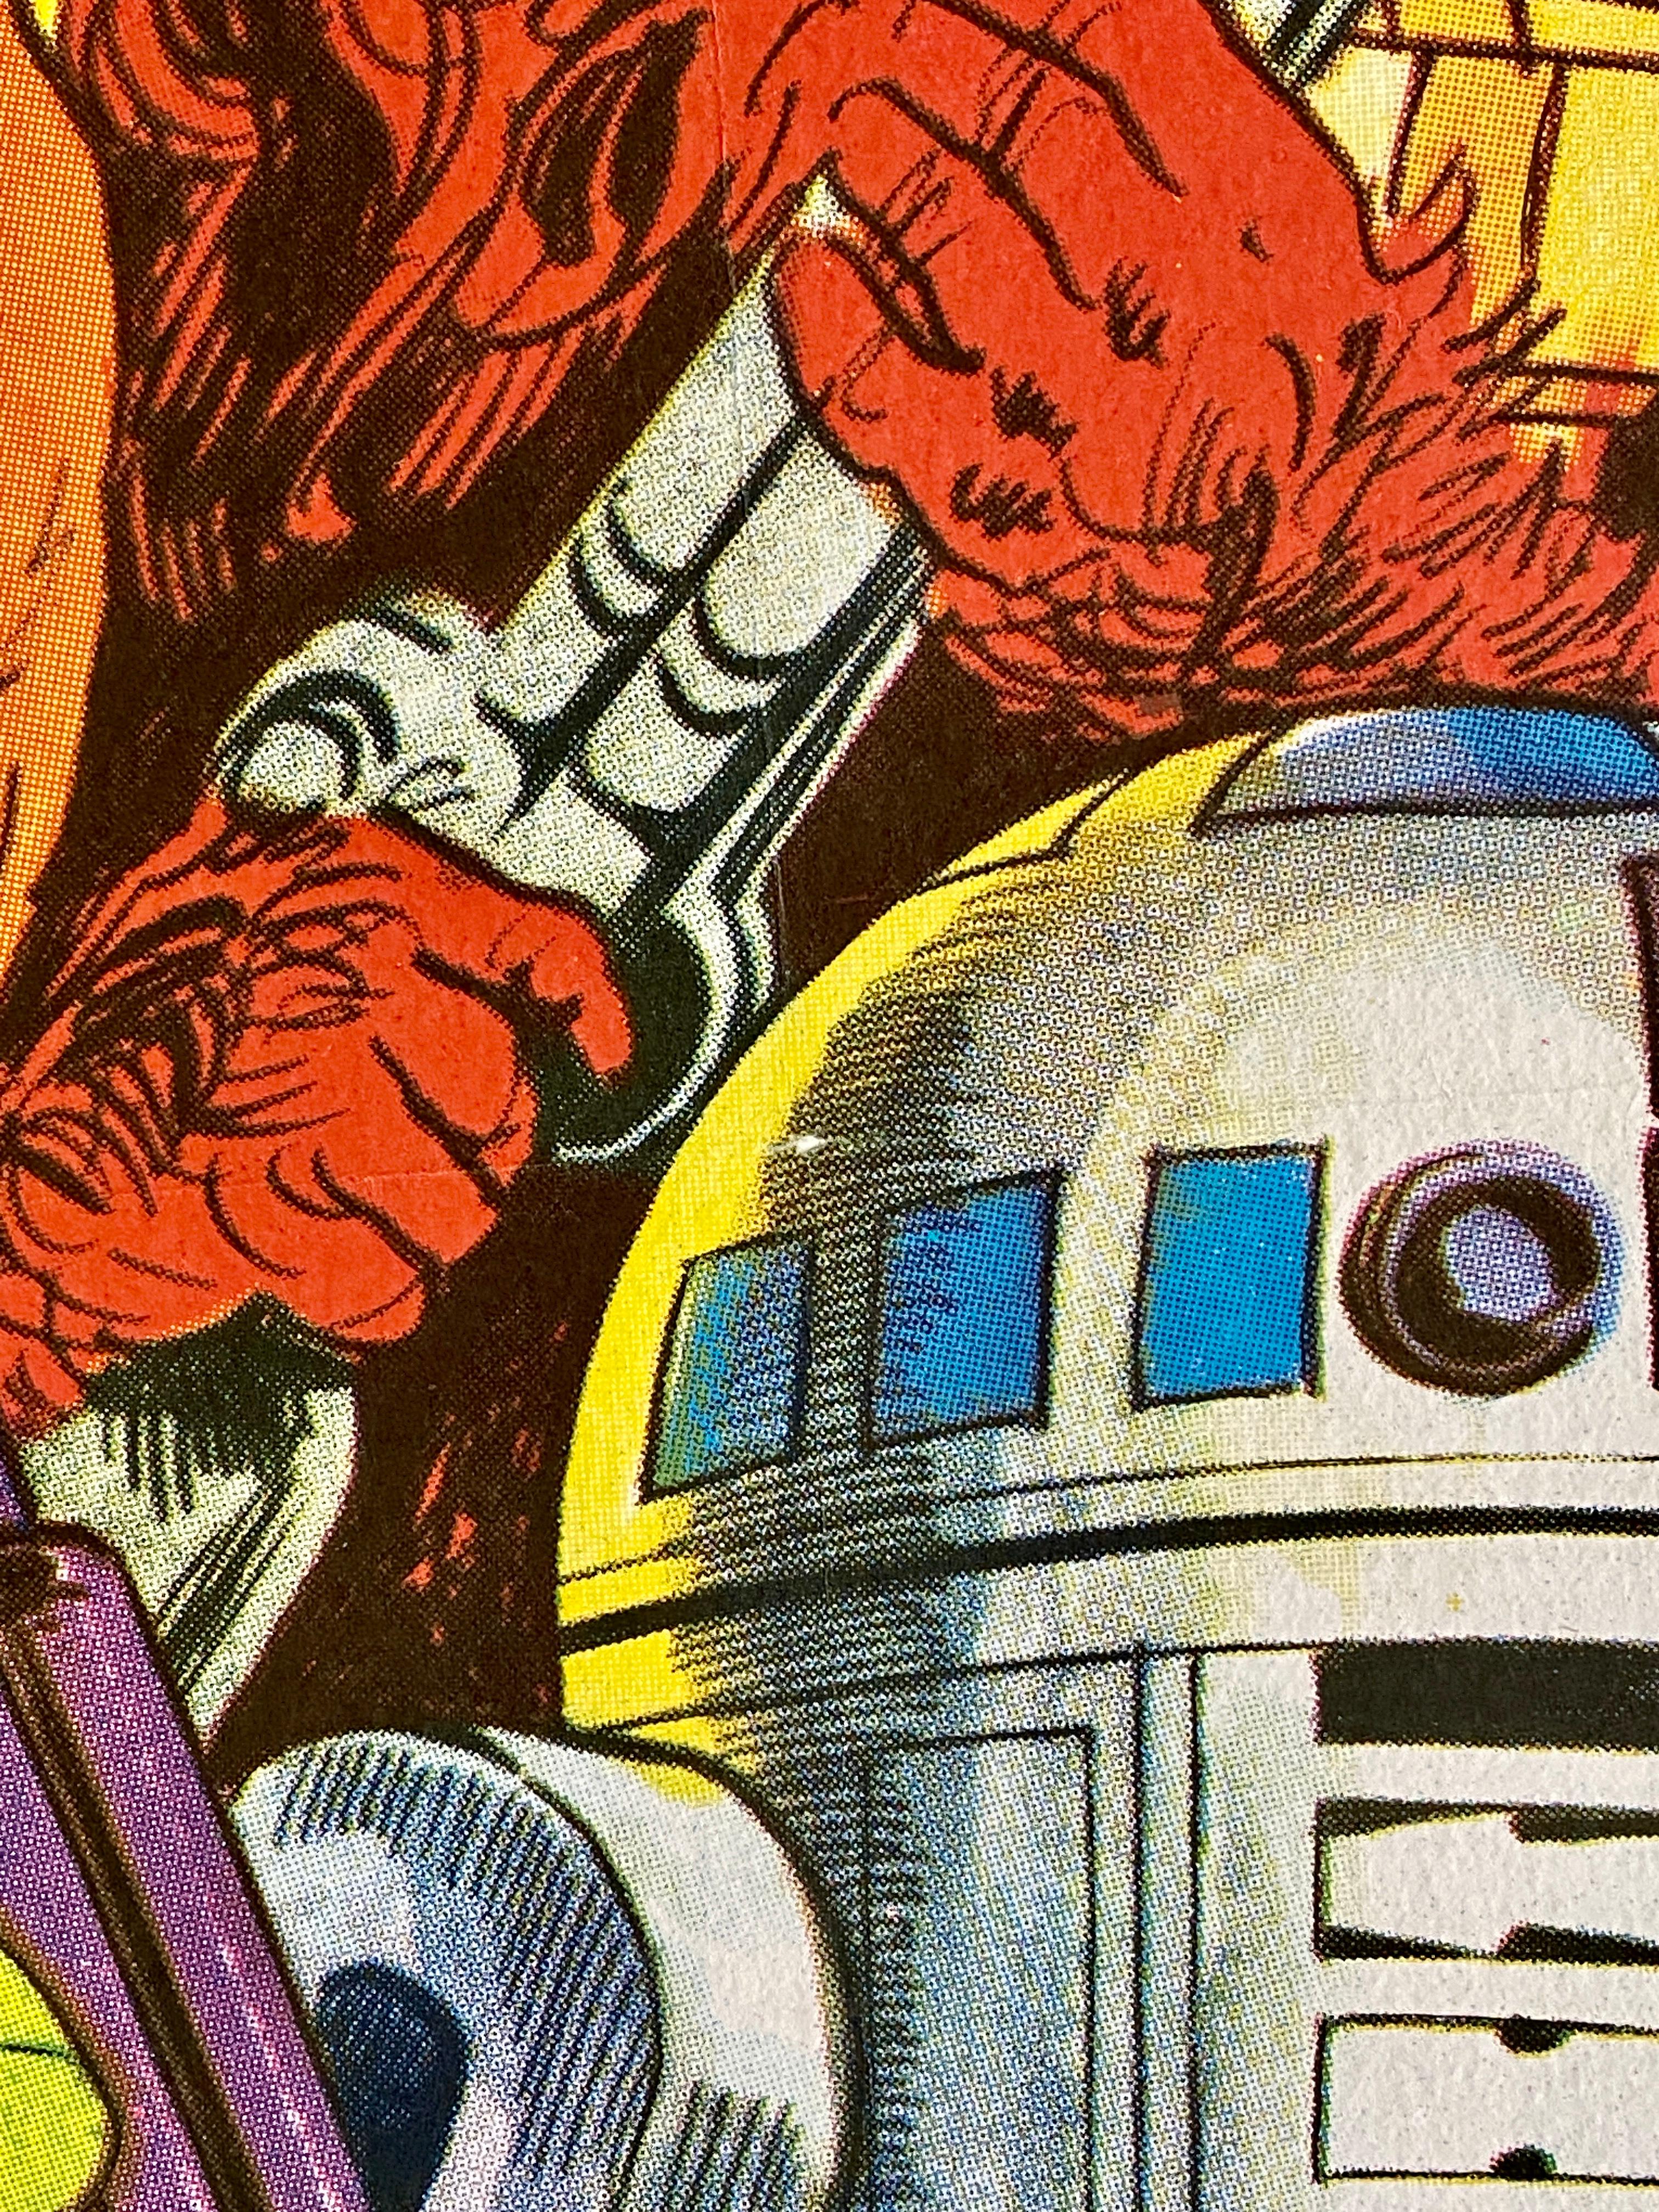 'Star Wars' Original Vintage Italian Movie Poster by Michelangelo Papuzza, 1977 6